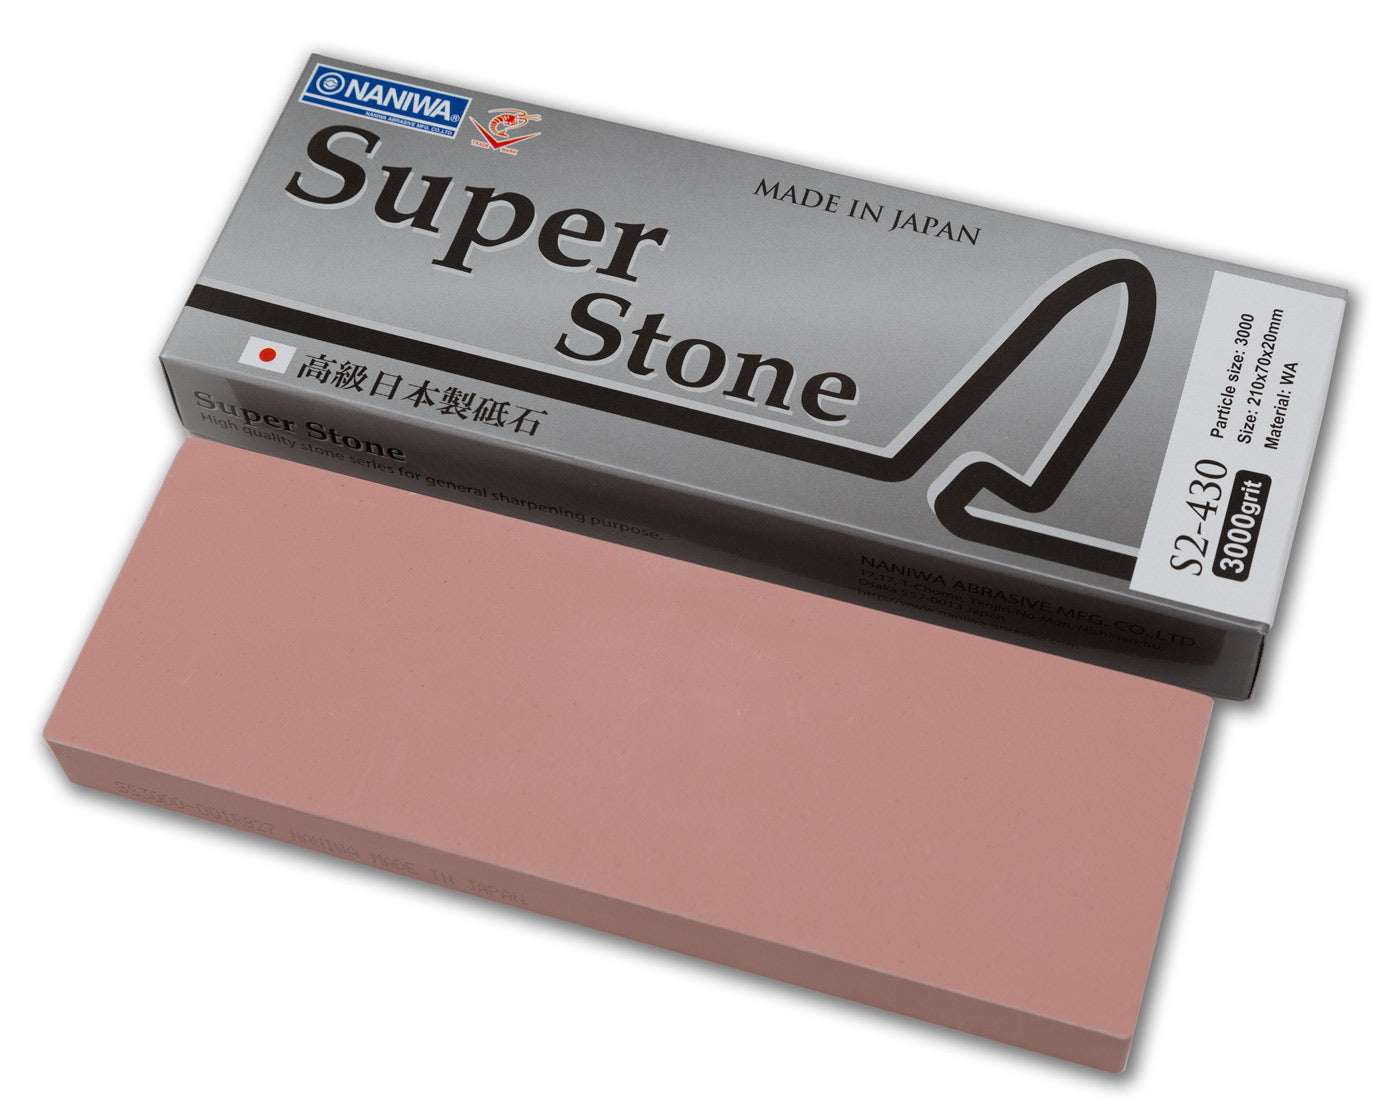 Naniwa Super-Stone Japanese Whetstone Sharpening Stone, 3000 grit